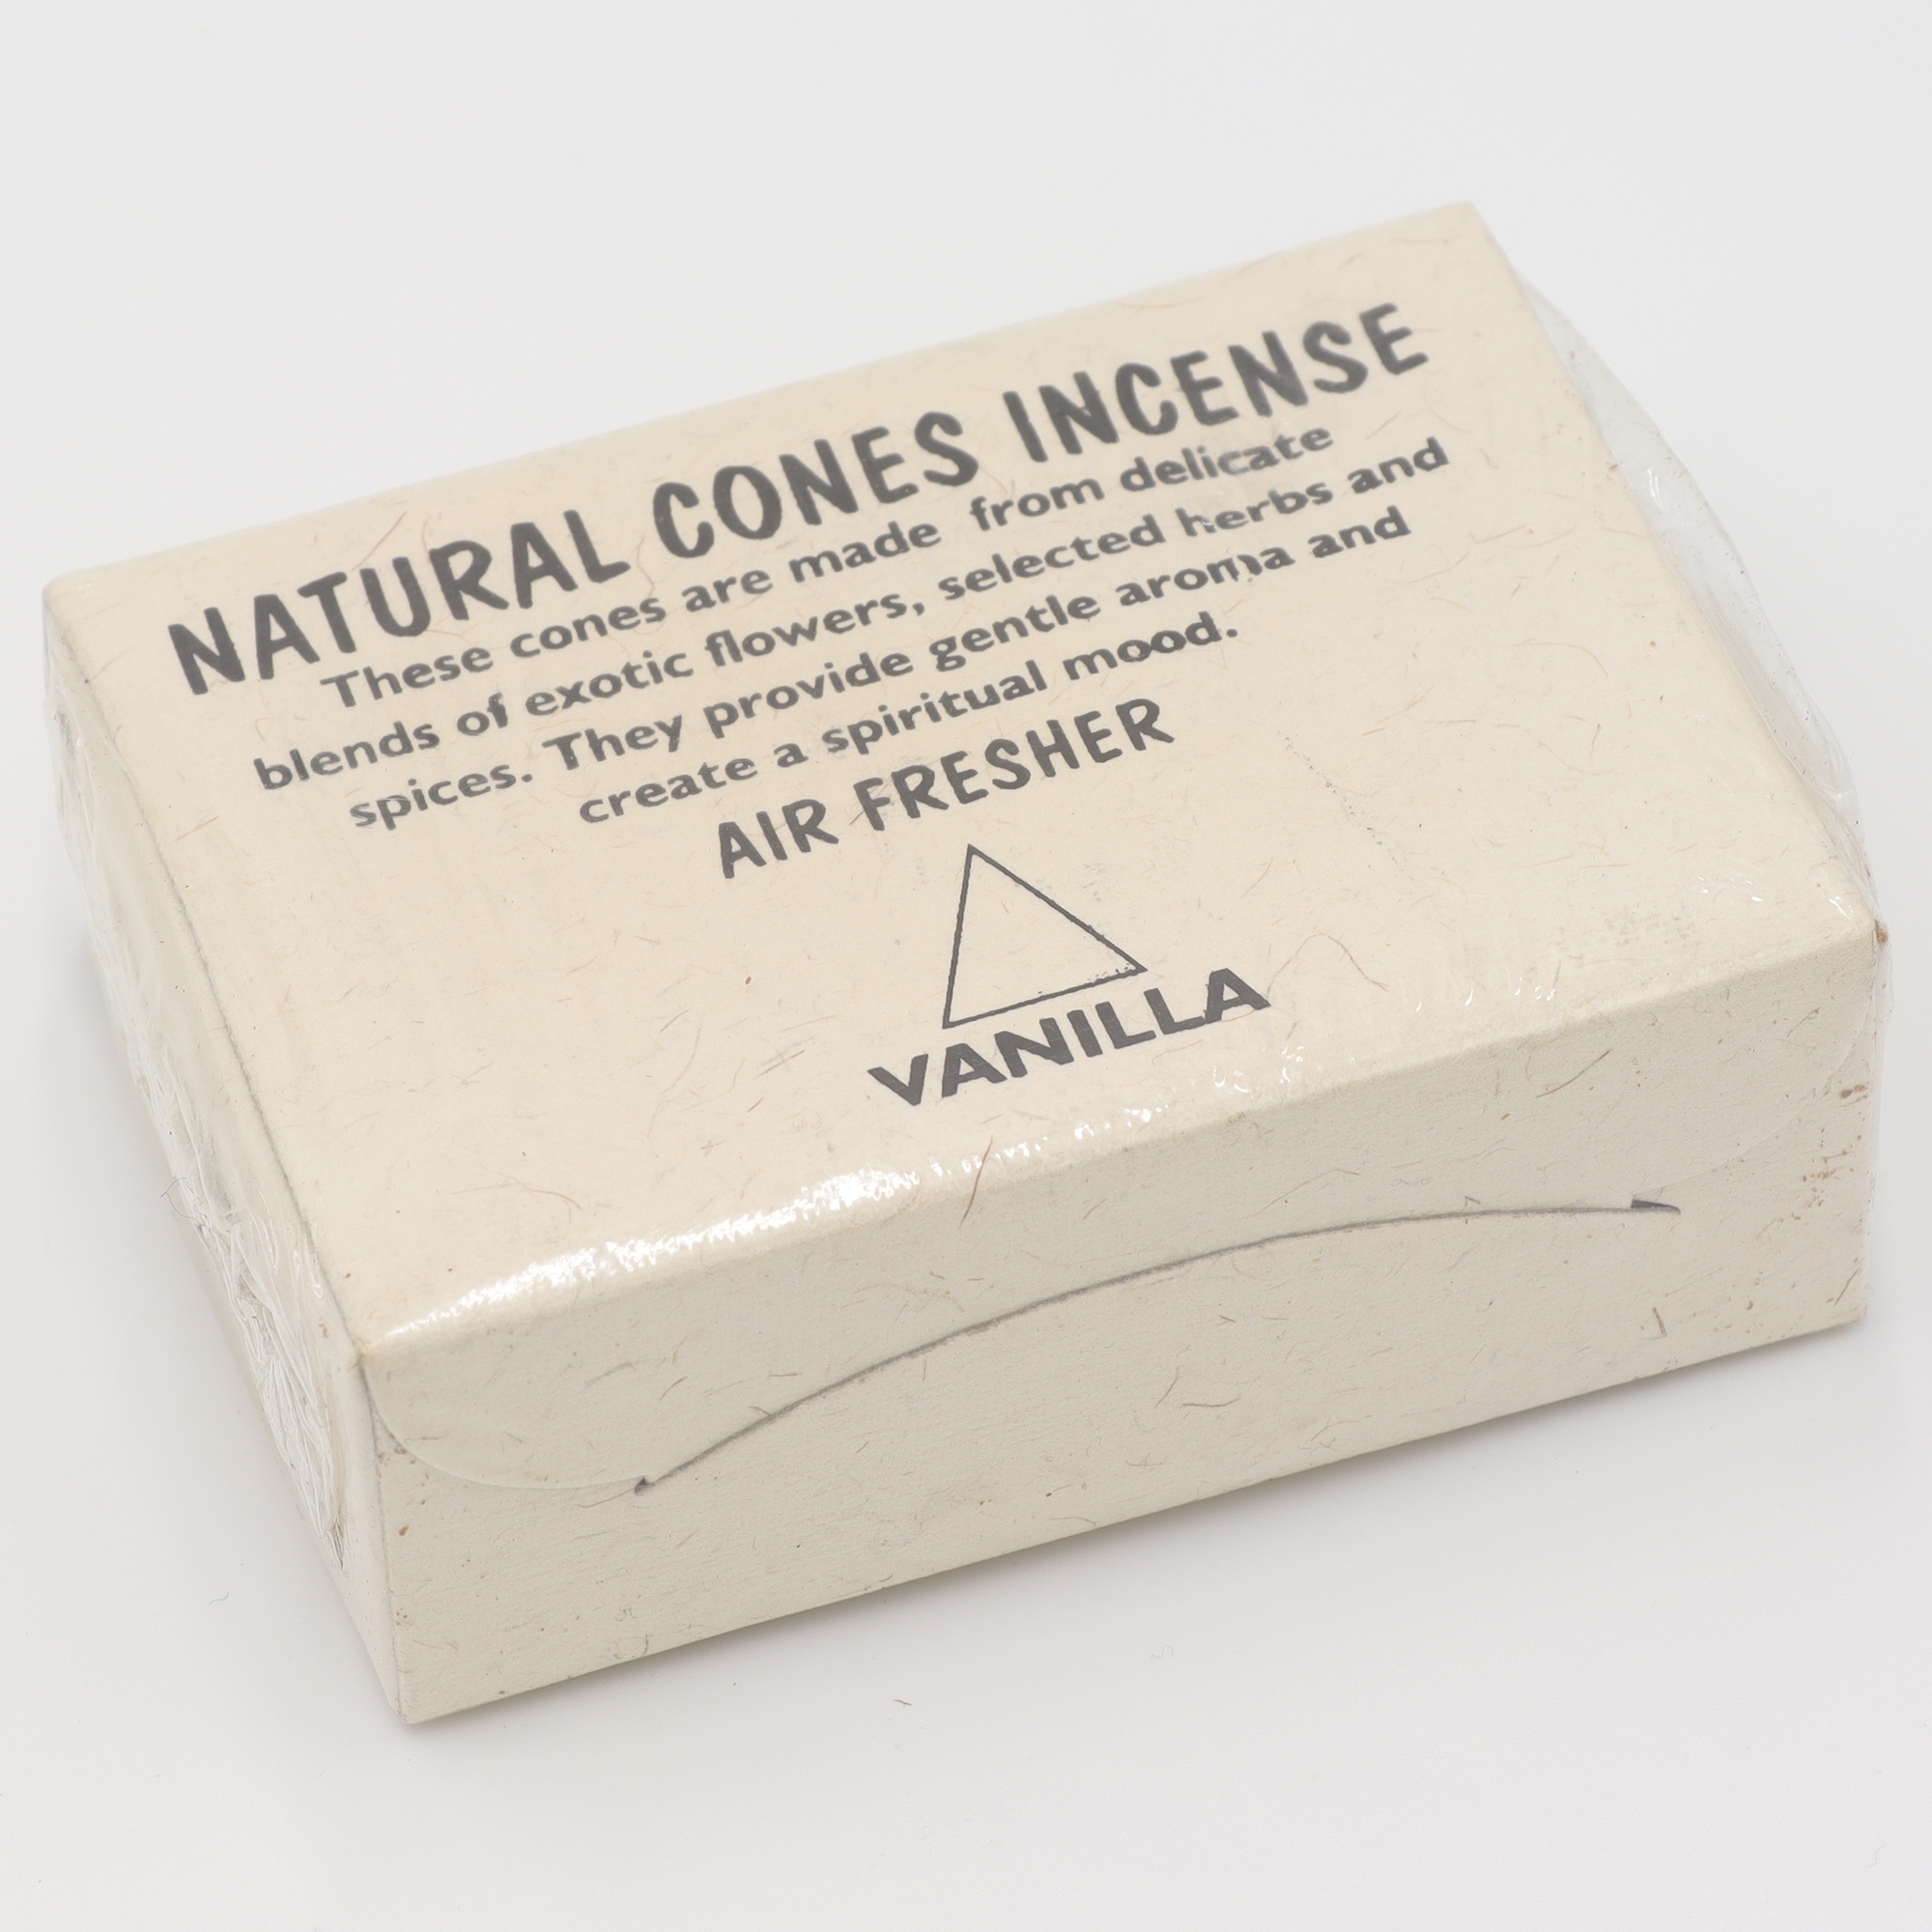 Natural Cones Incense - Vanilla - Räucherkegel aus Nepal, handgemachte Kegel aus rein natürlichen Zutaten